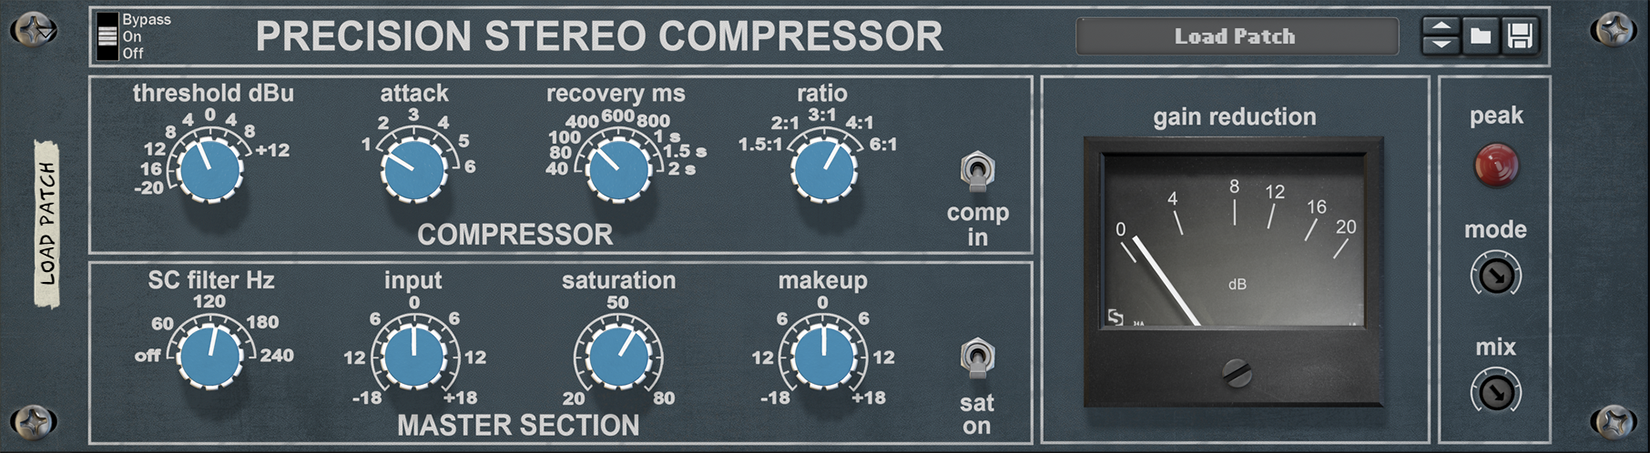 Precision Stereo Compressor